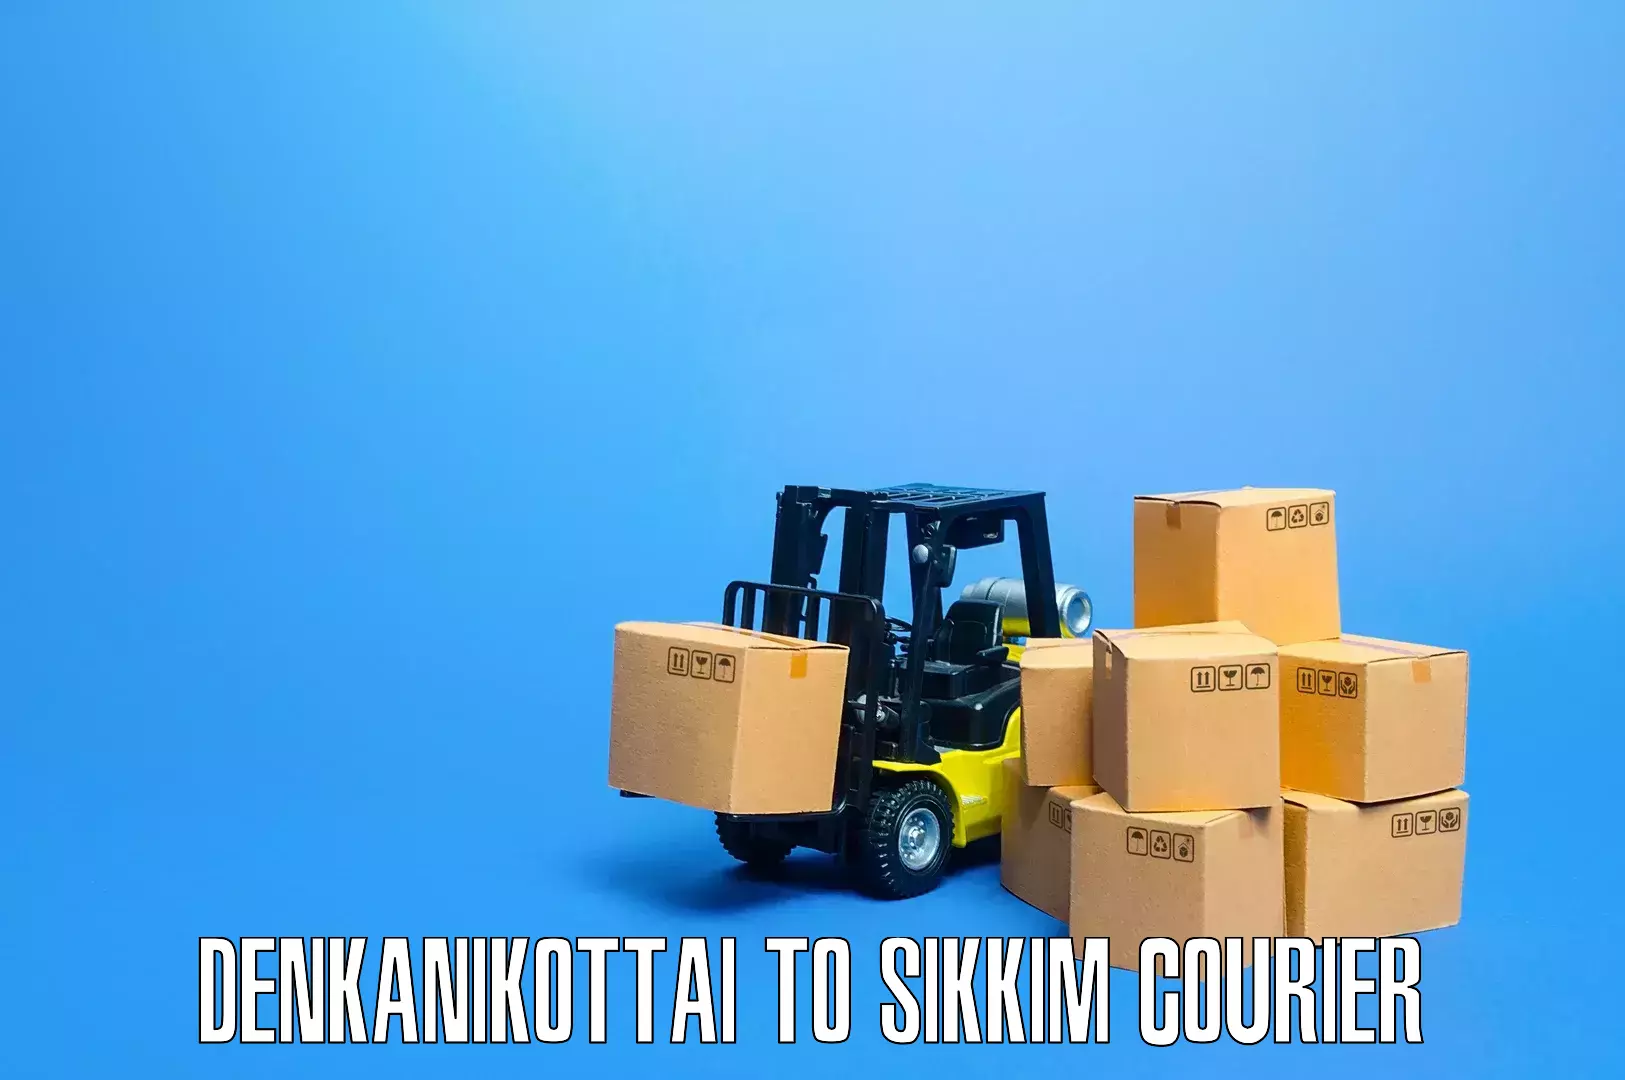 Stress-free furniture moving in Denkanikottai to Singtam